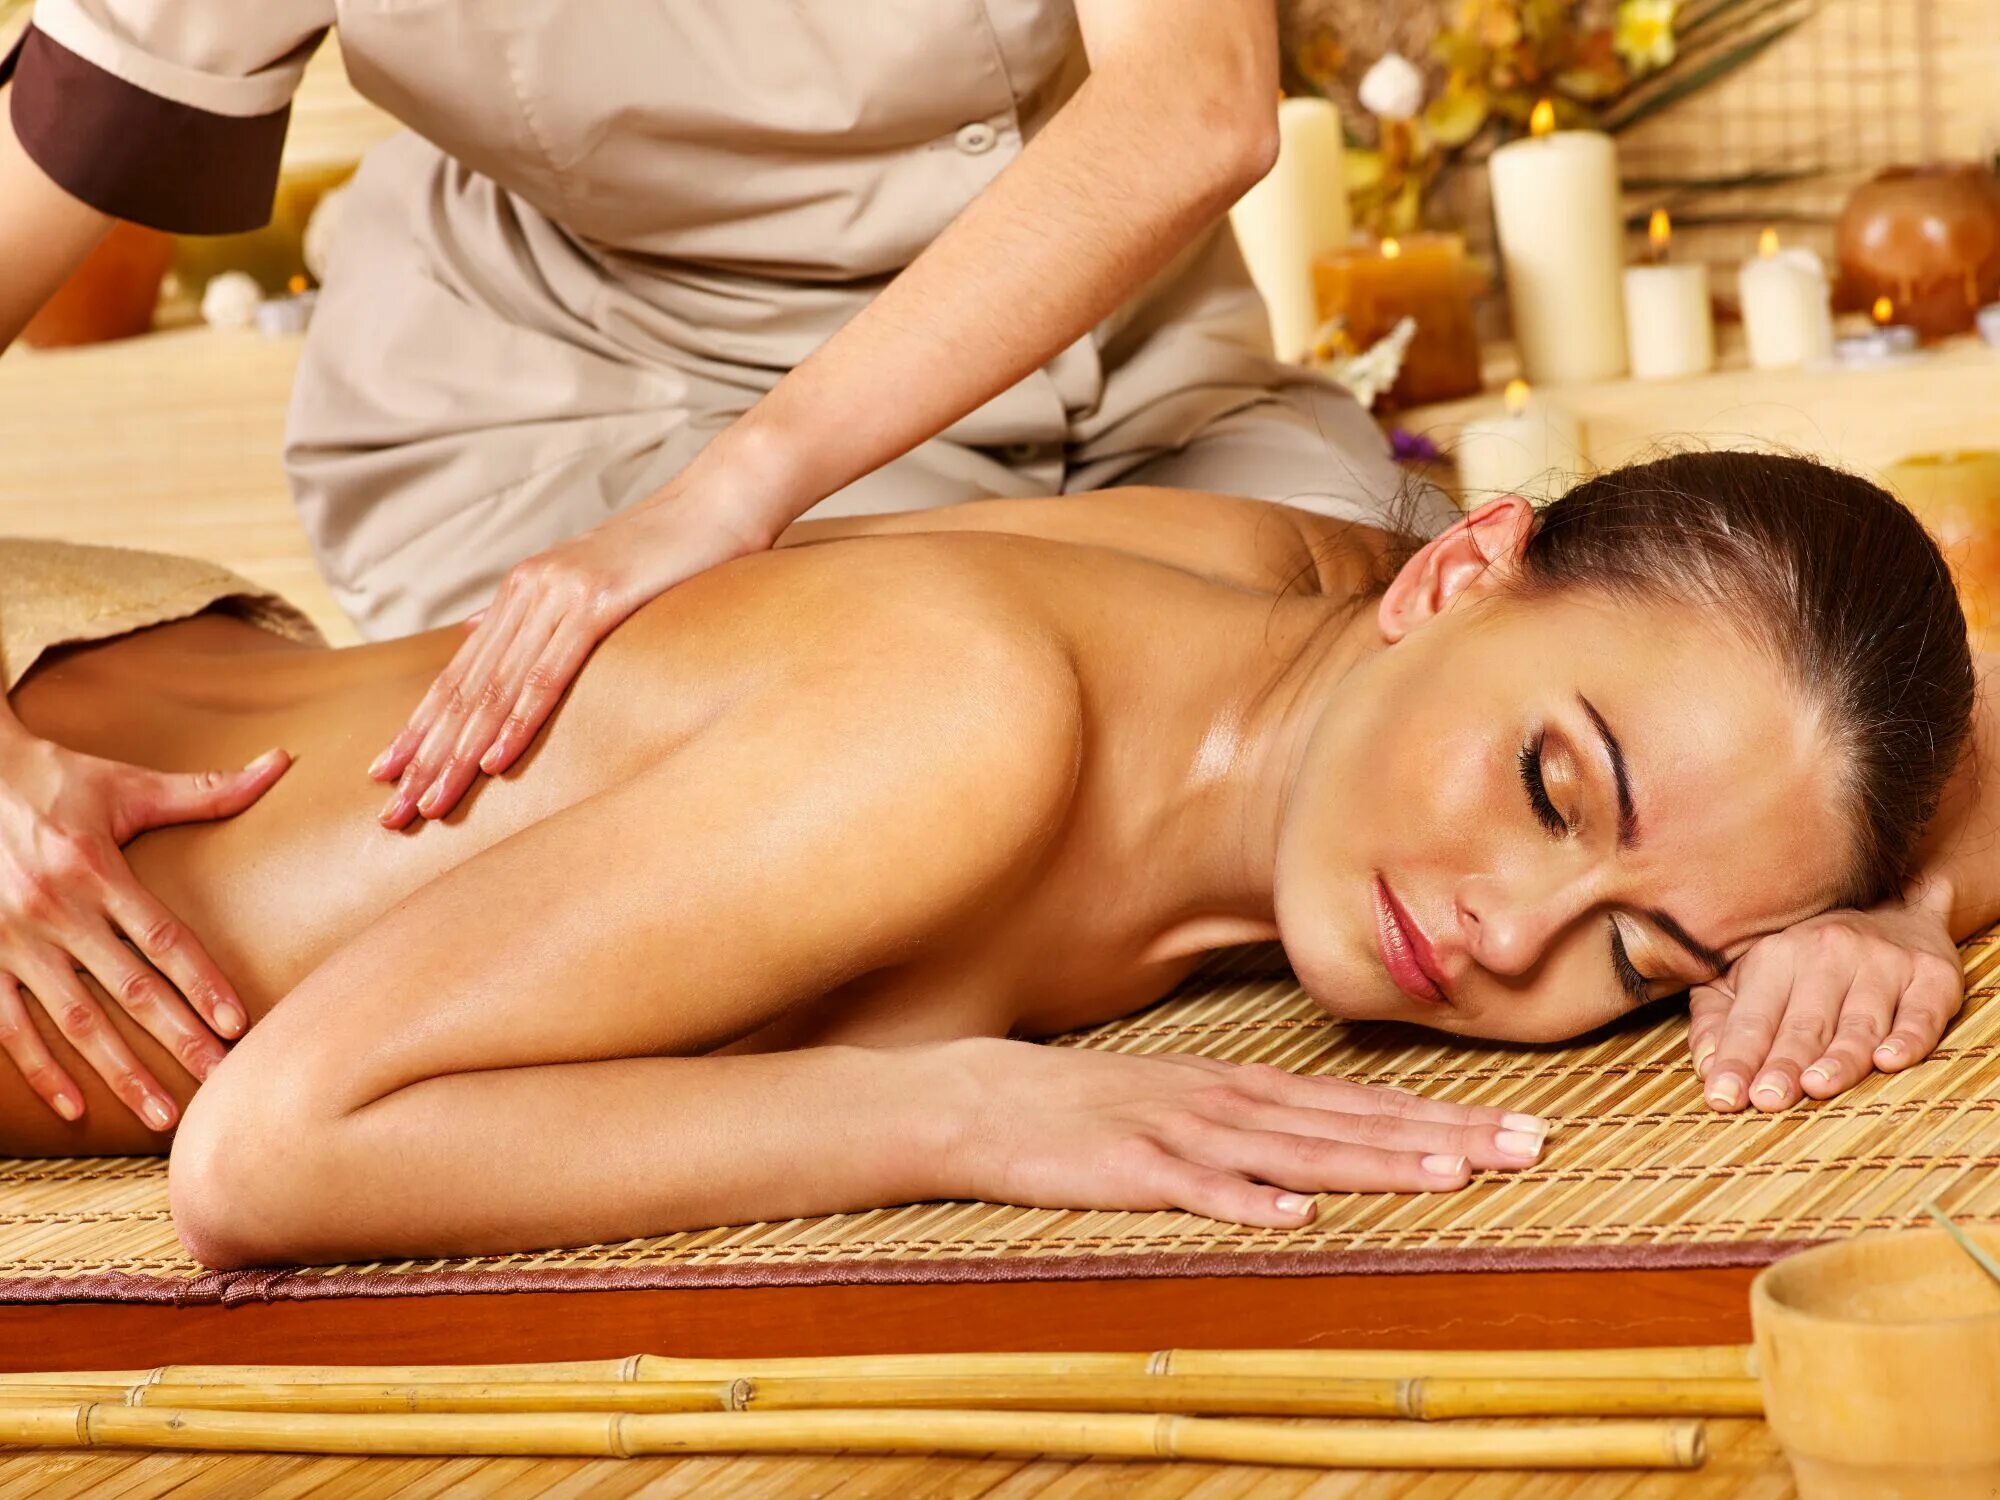 Ntr massage. Массаж тела. Тайский массаж спины. Женский массаж. Общий массаж тела.